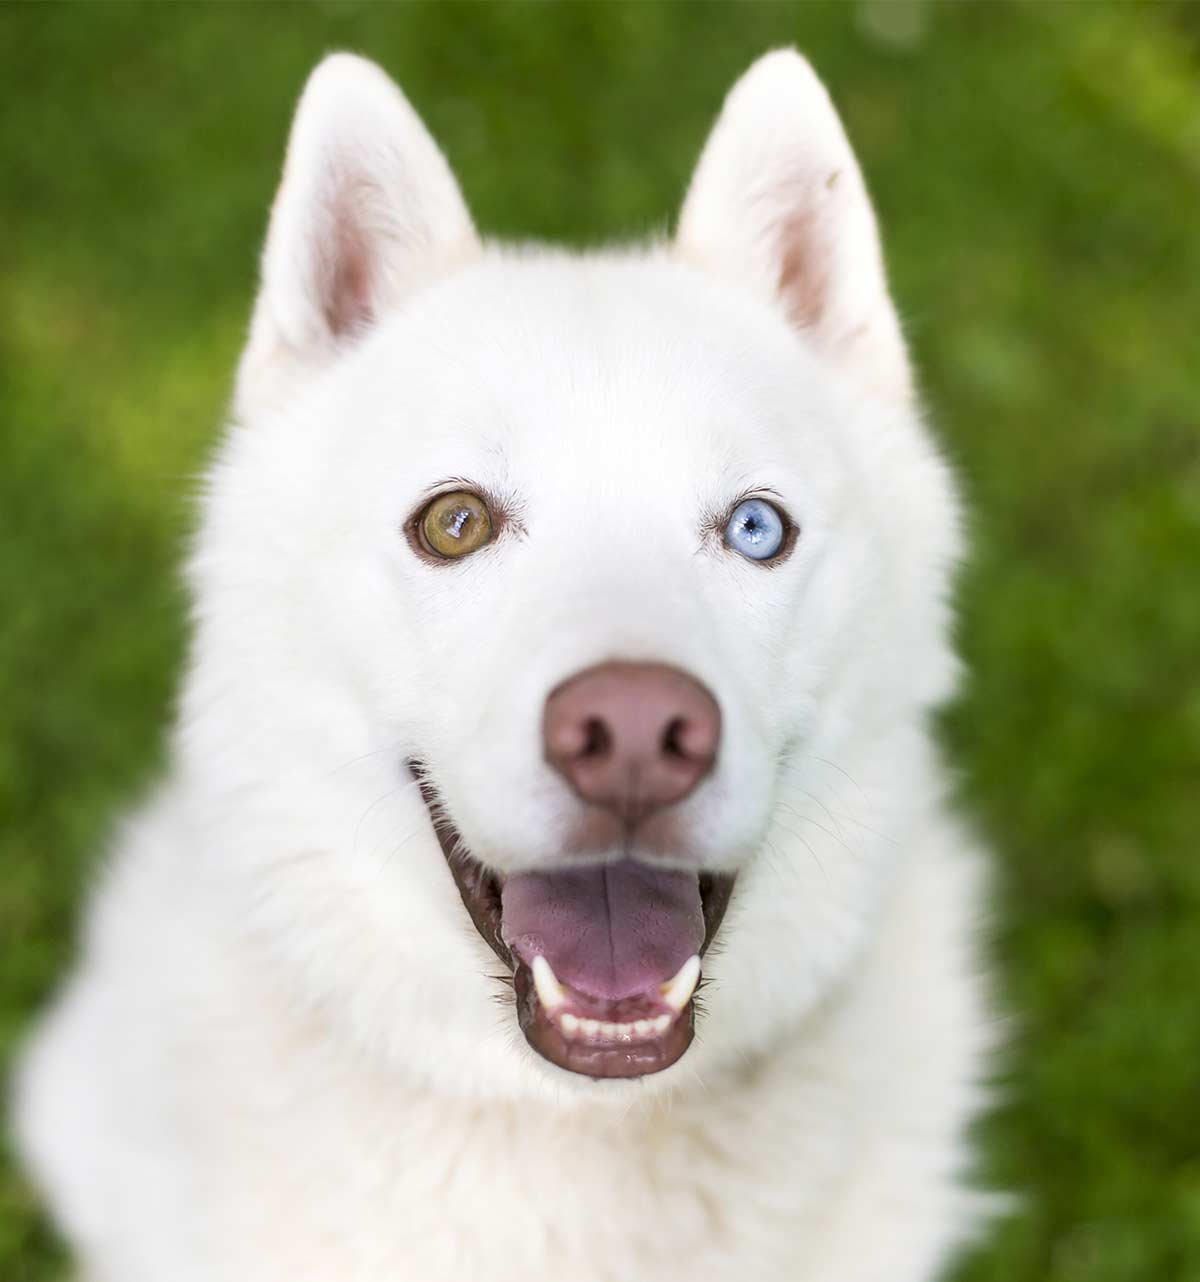 duitse herder en husky honden met verschillend gekleurde ogen